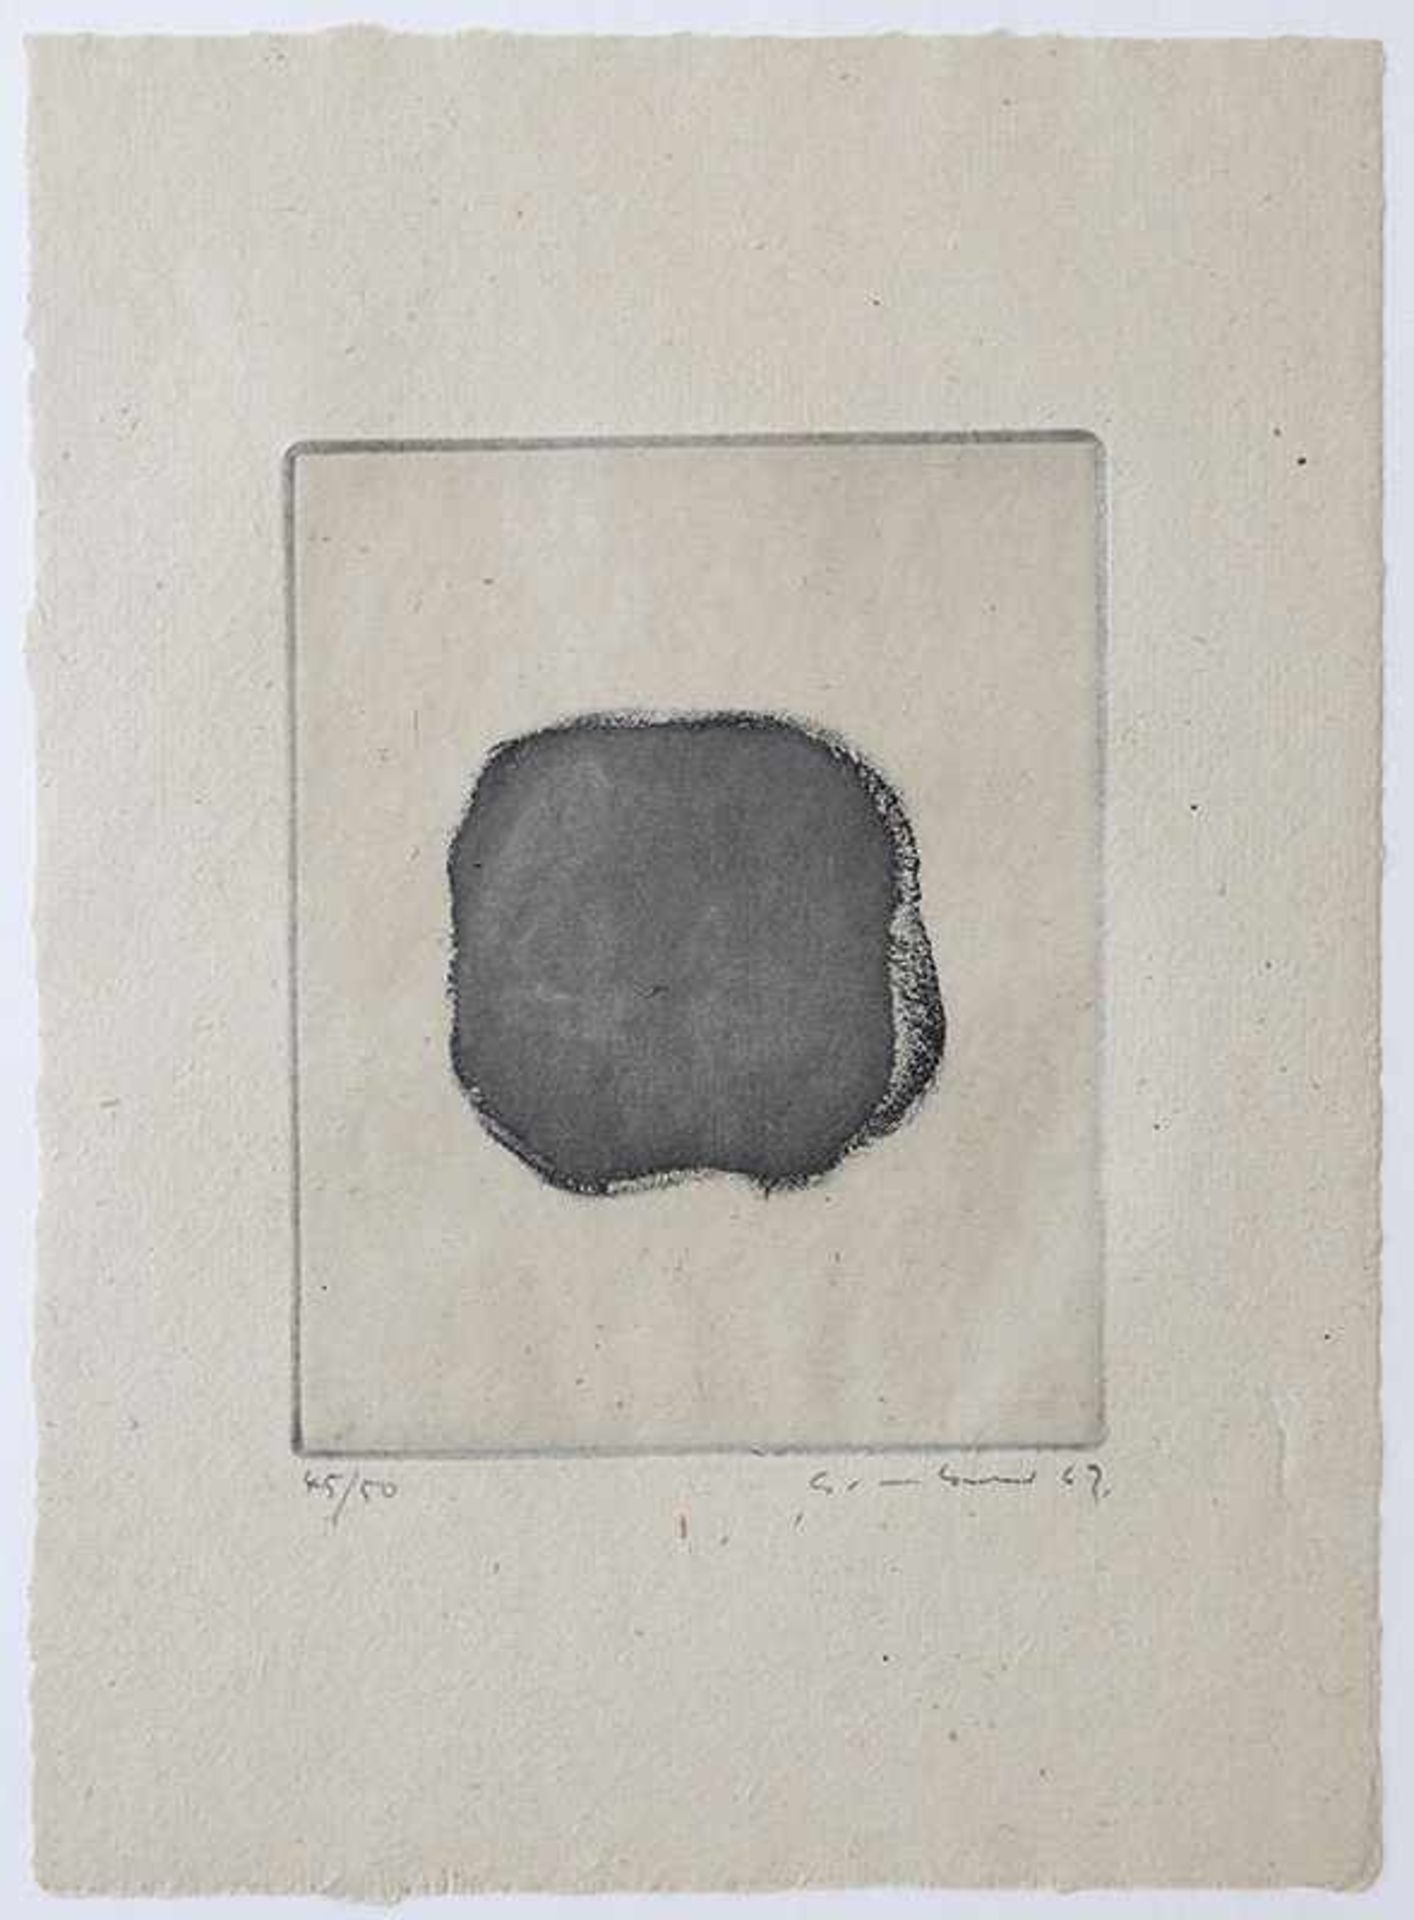 Ohne TitelGotthard Graubner* (1930-2013)Radierung. Plattengröße: 14,7 x 11,8 cm. Blattgröße: 27 x